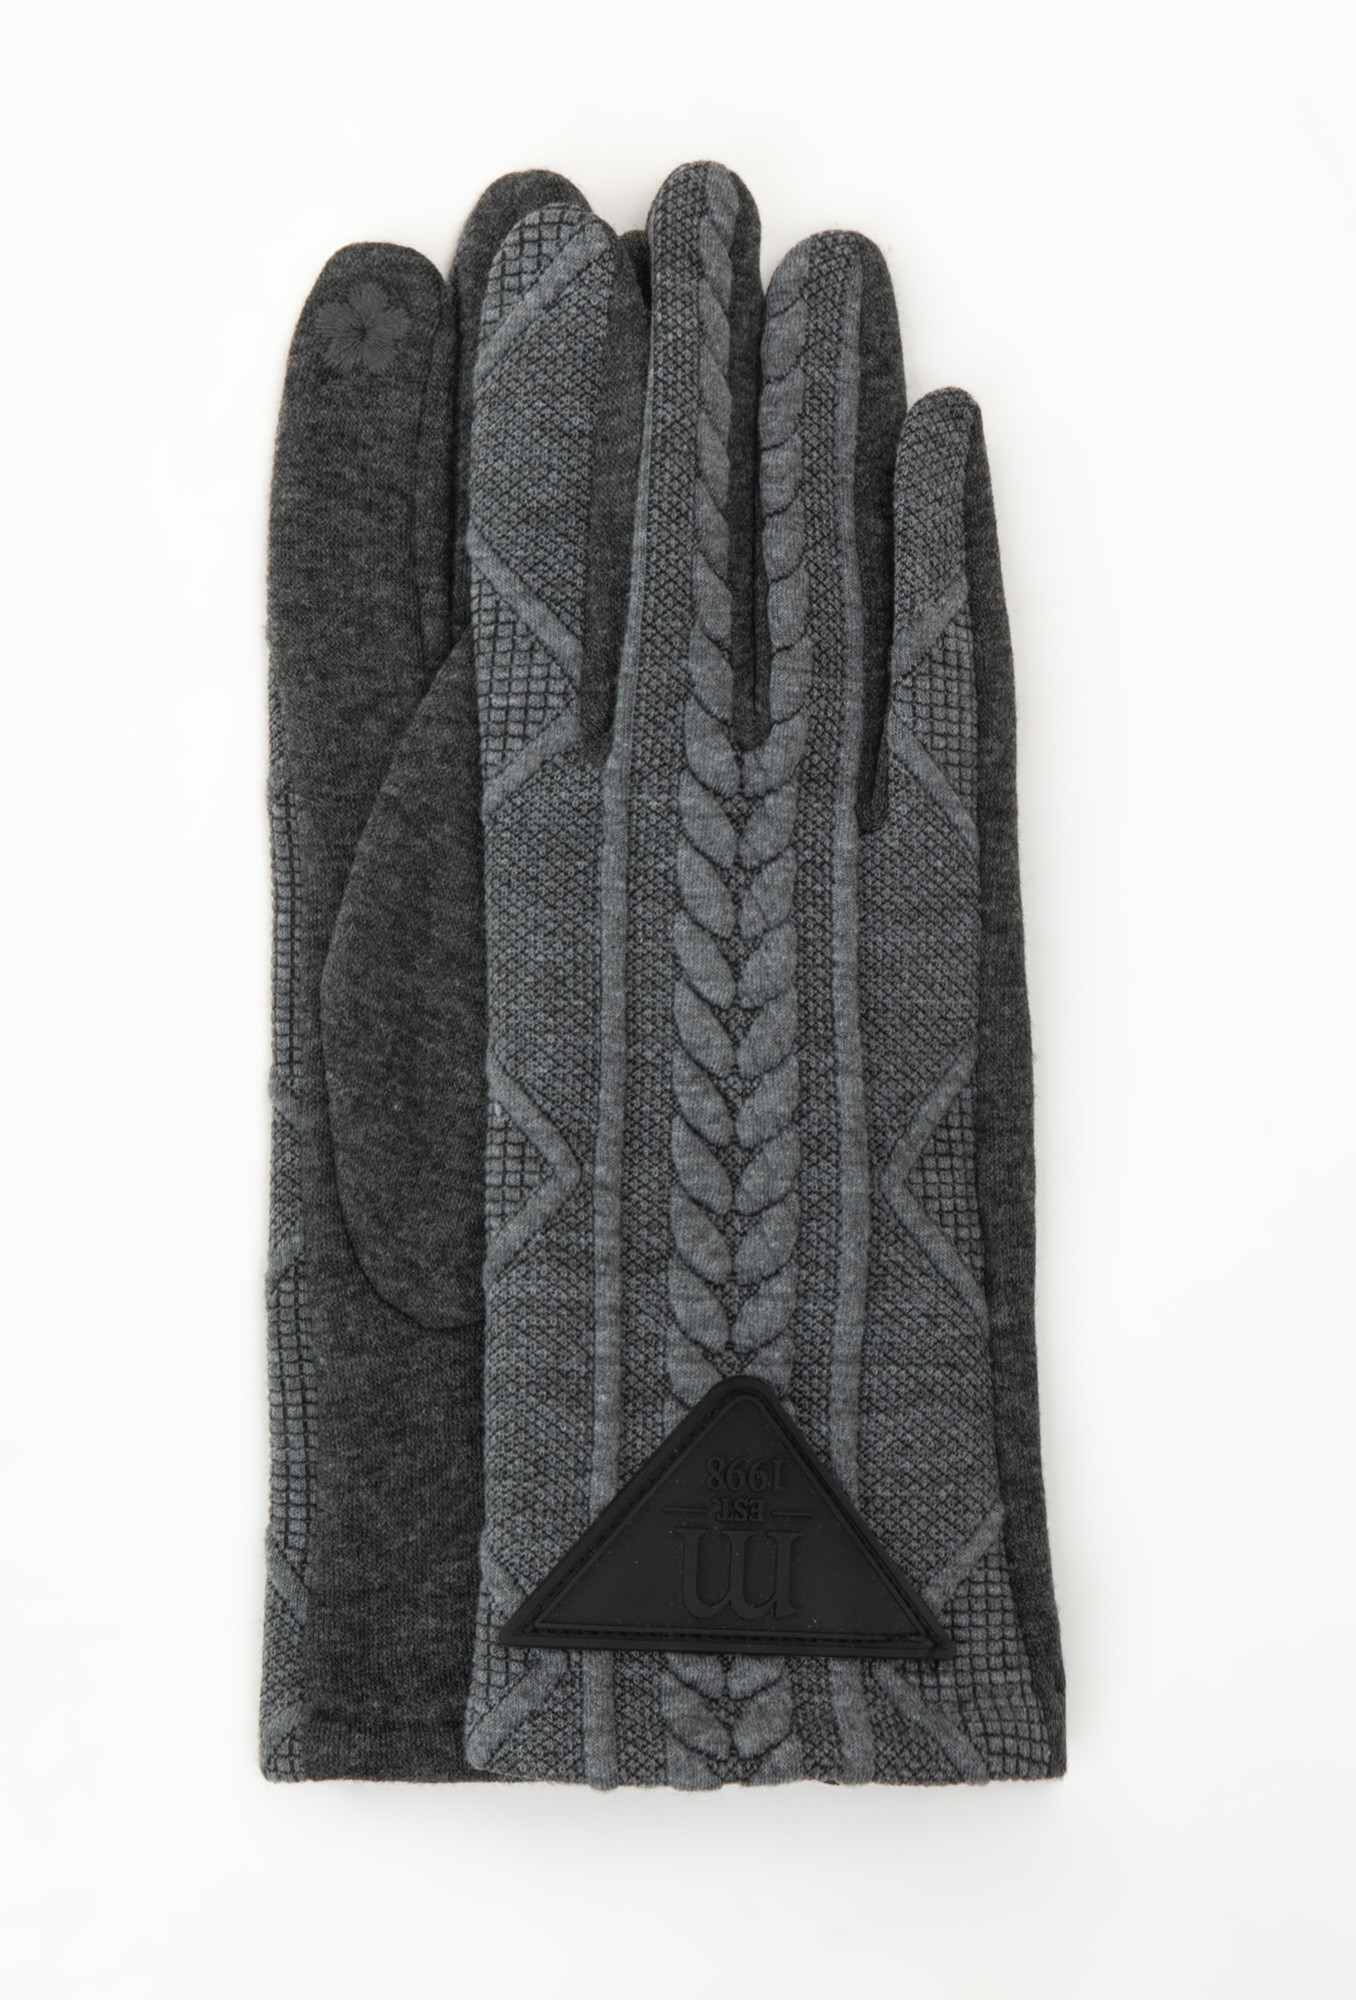 Monnari Rukavice Dámské pletené rukavice Grey S/M